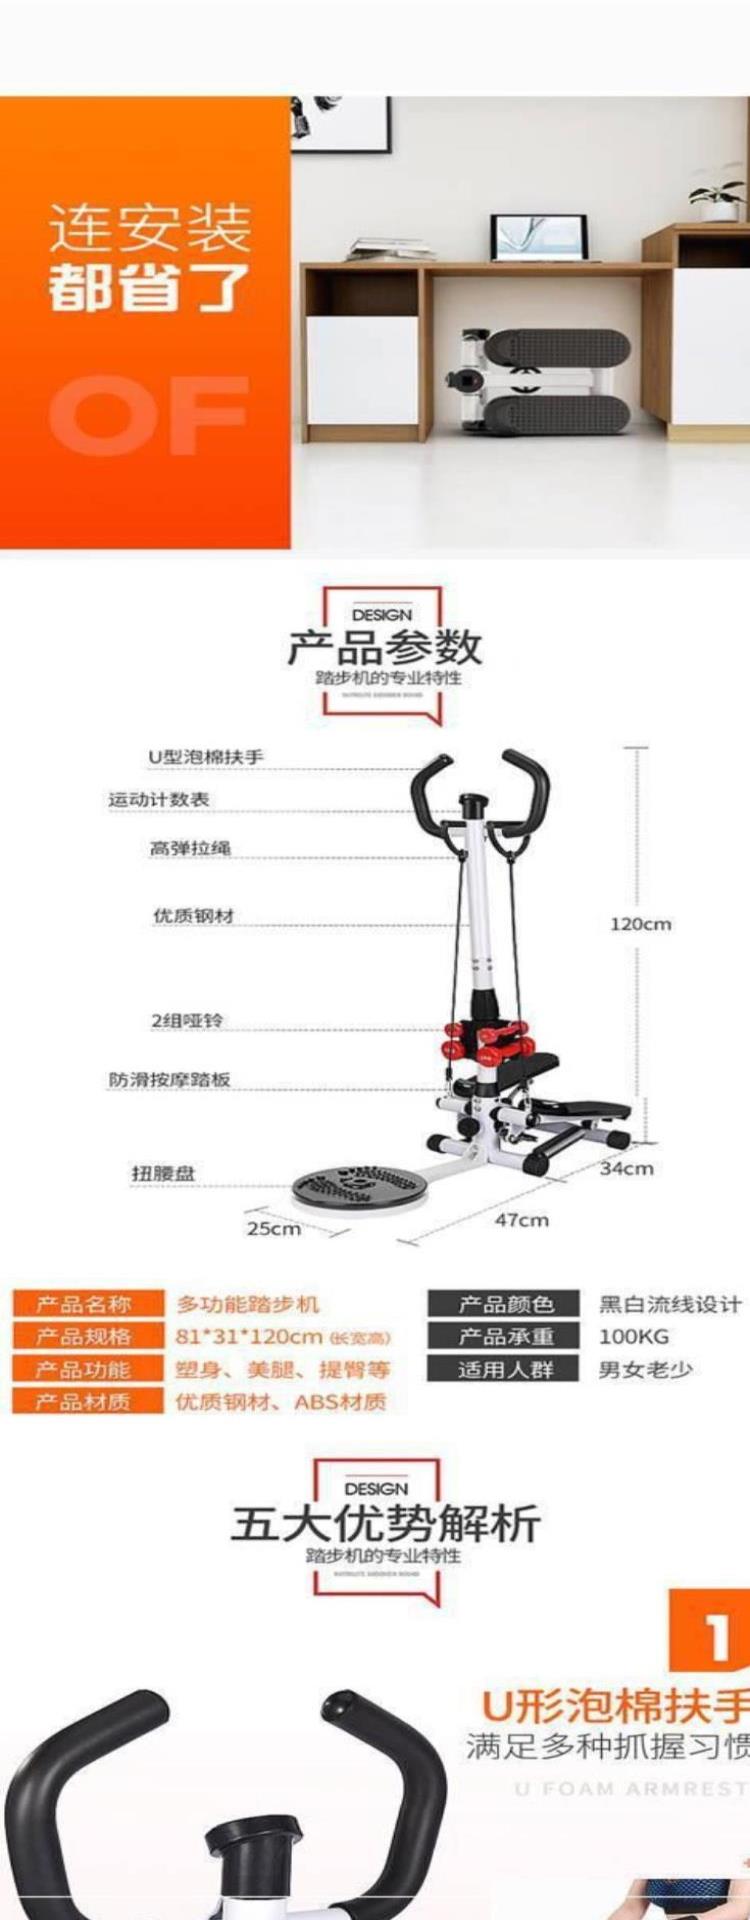 Thiết bị giảm cân theo bước đa chức năng 2019 Chân tay vịn thủy lực Xoay eo Trang chủ Mini Fitness - Stepper / thiết bị tập thể dục vừa và nhỏ